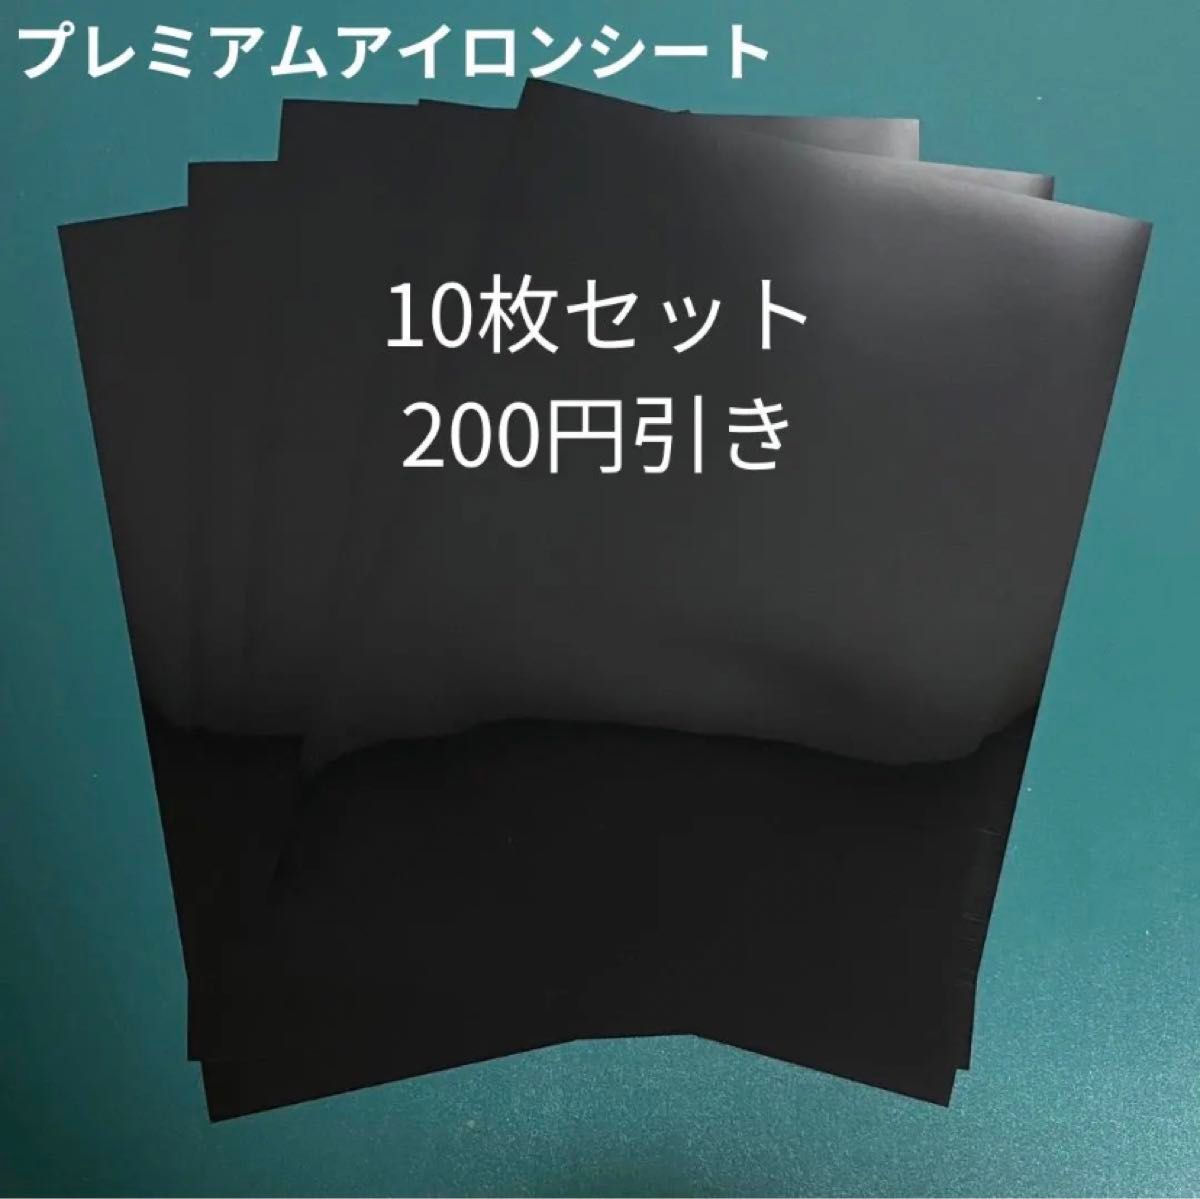 【黒】熱転写アイロンプリントシート10枚セット A4サイズ程度